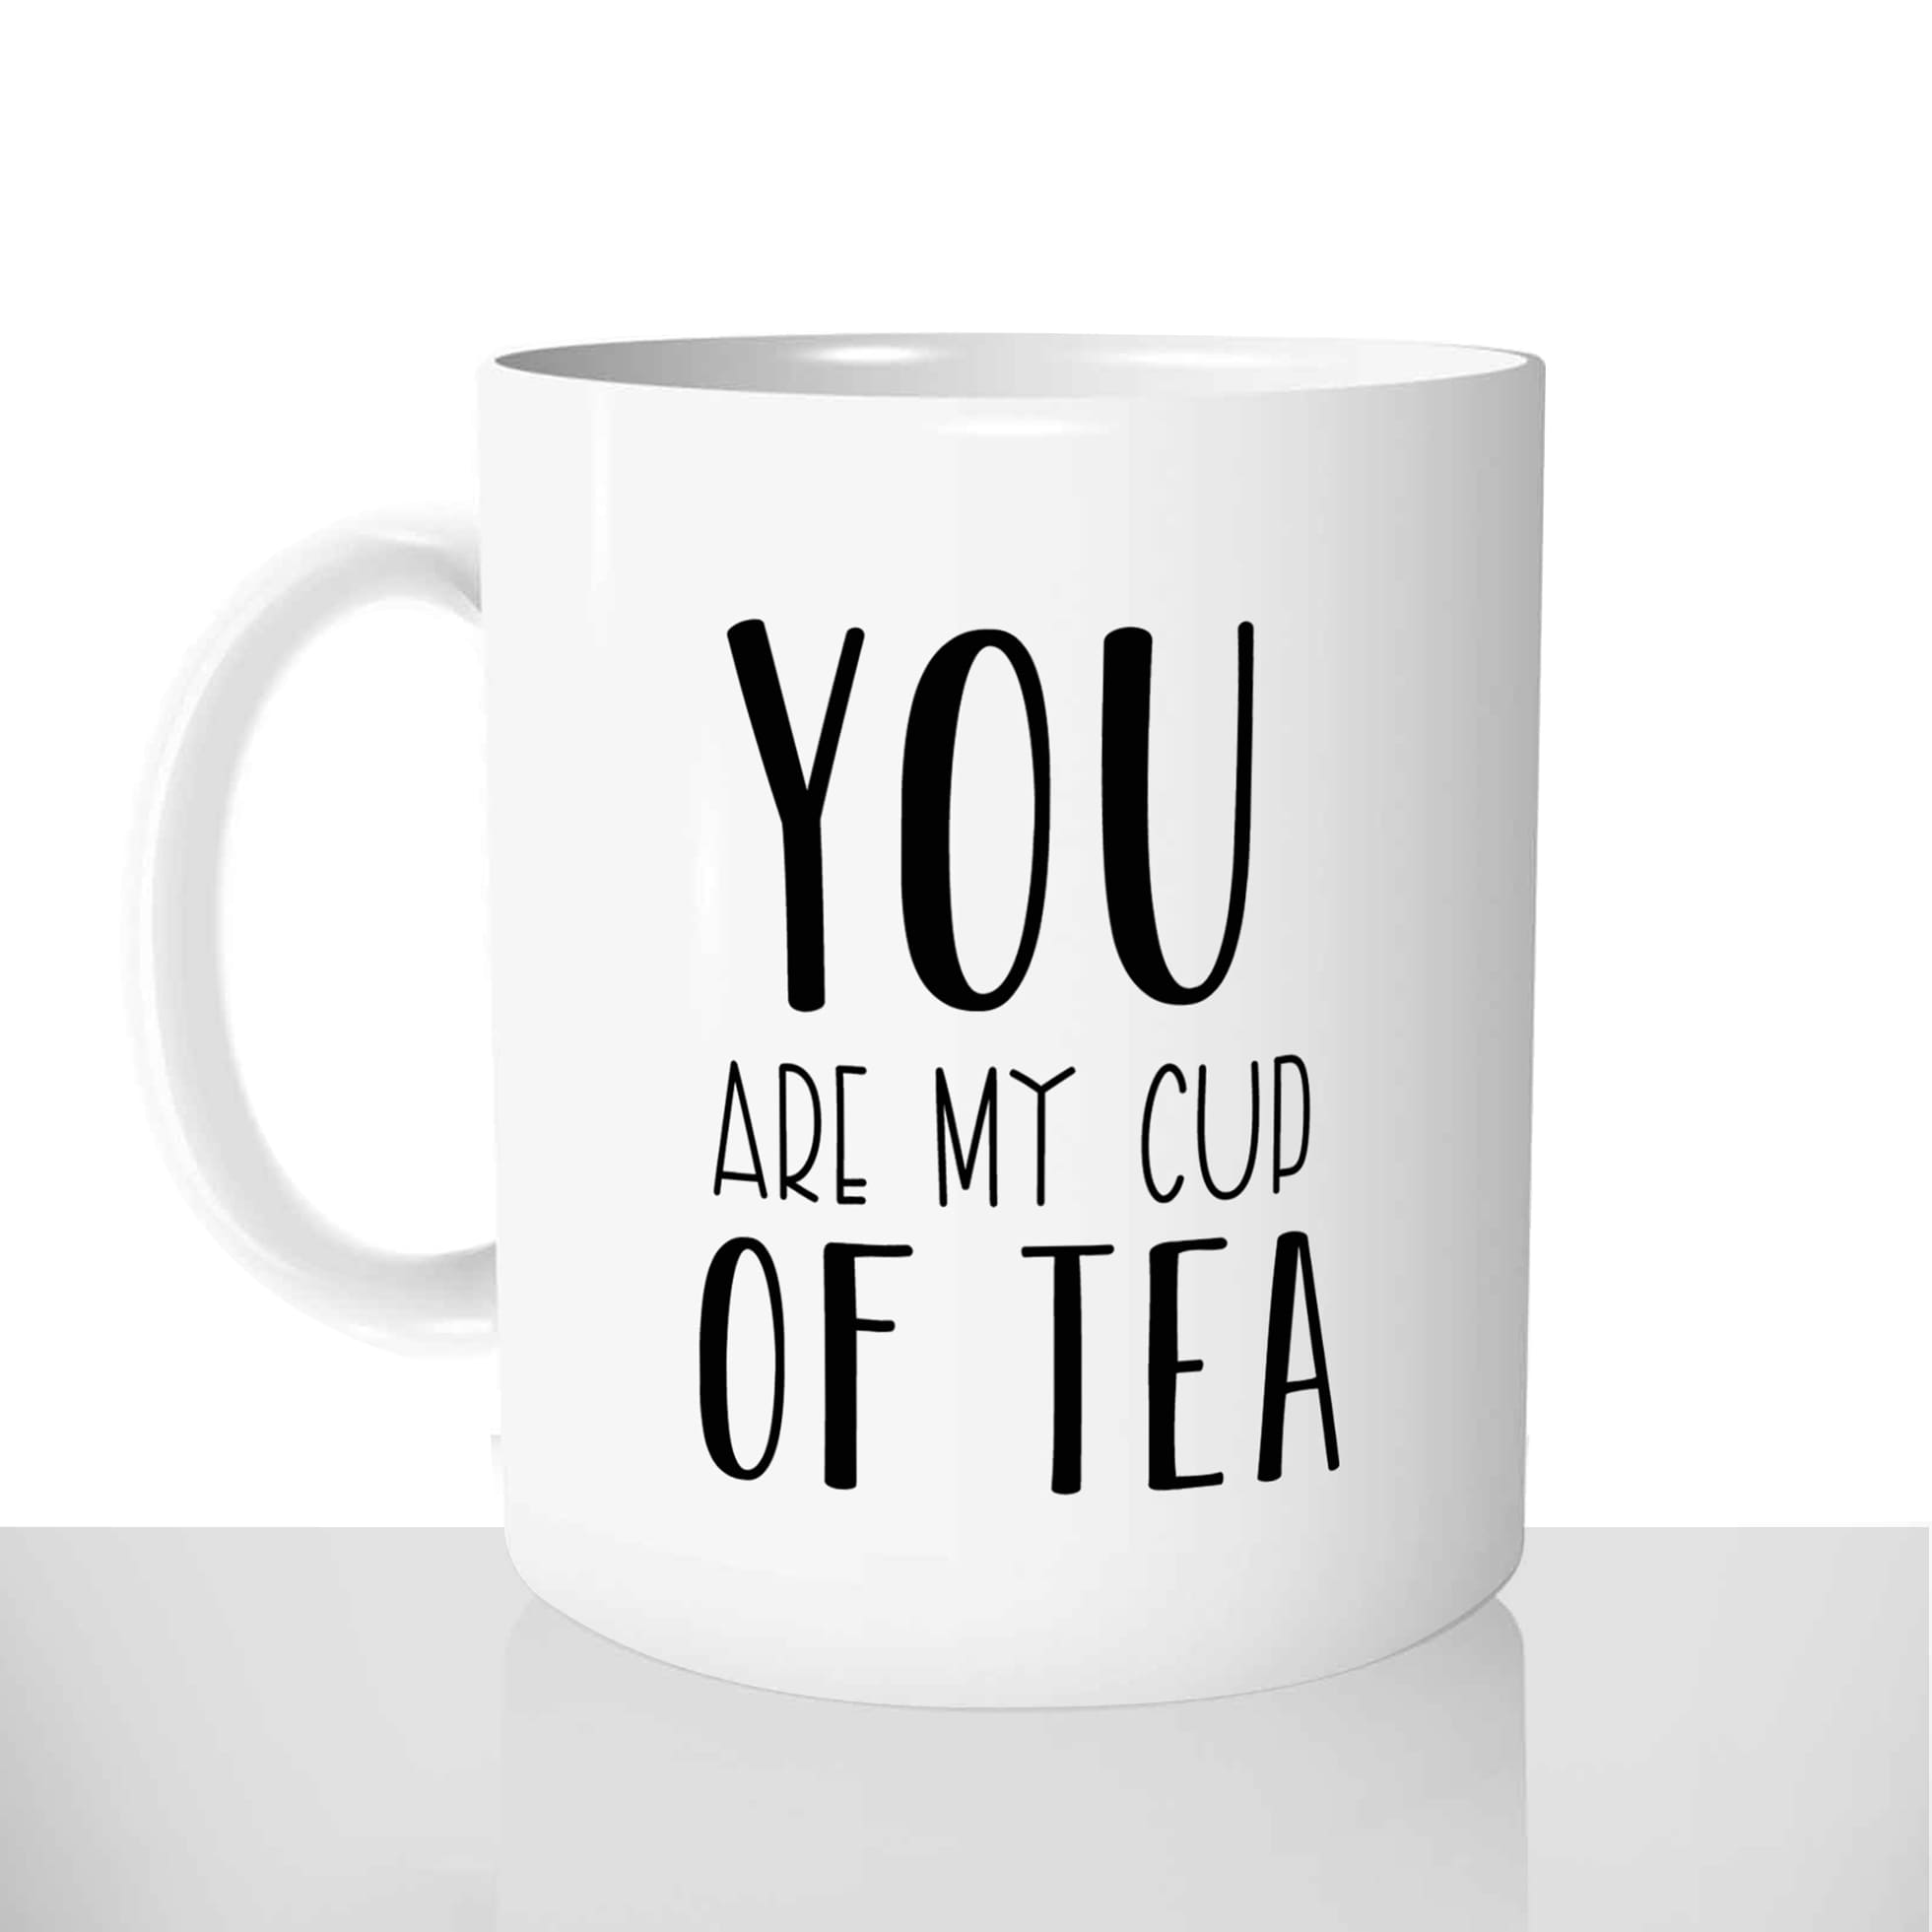 mug classique en céramique 11oz personnalisé personnalisation photo gourmand you are my cup of tea chou offrir cadeau